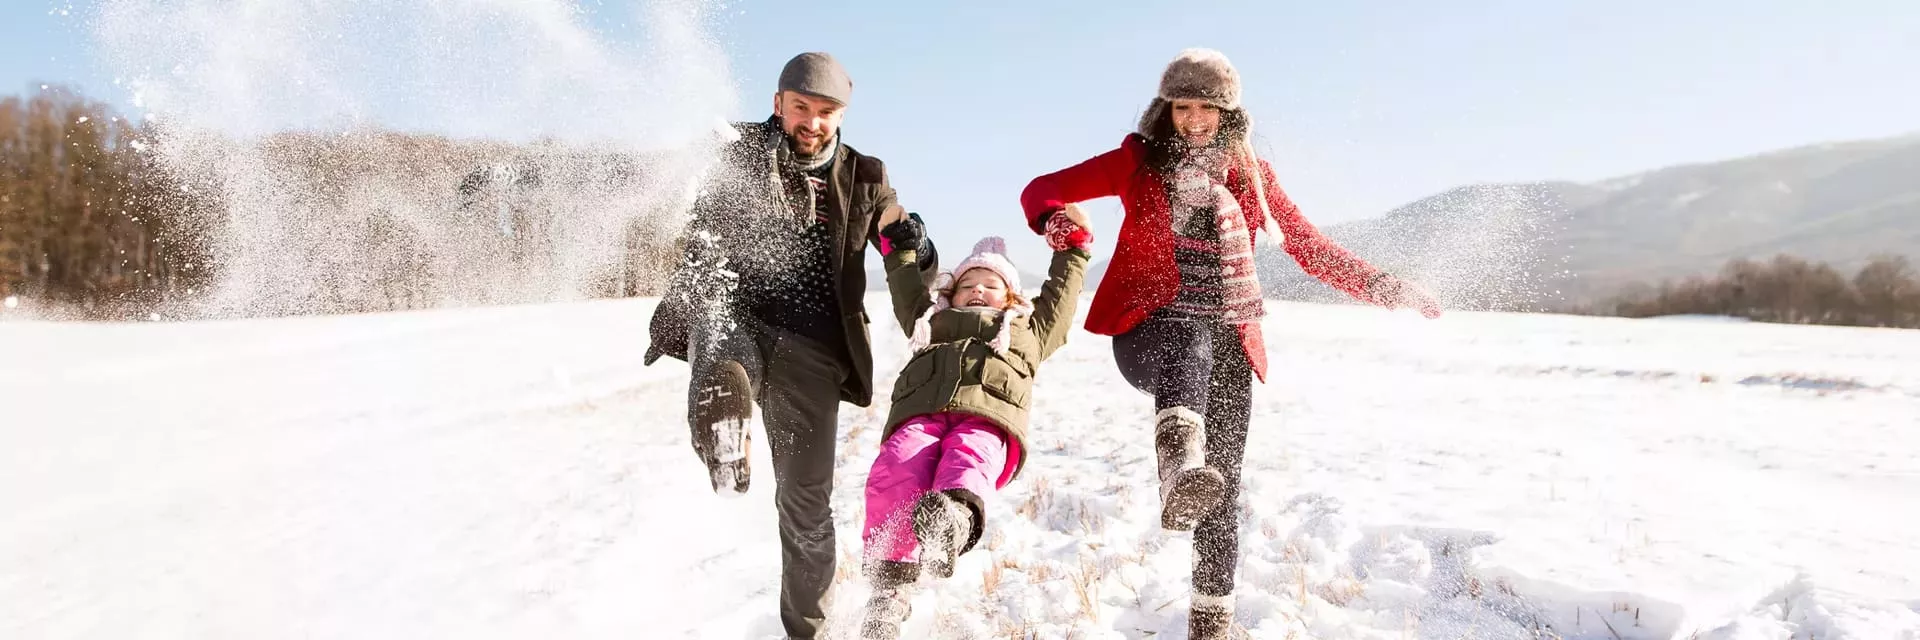 5 idées pour passer des vacances à la neige pas chères